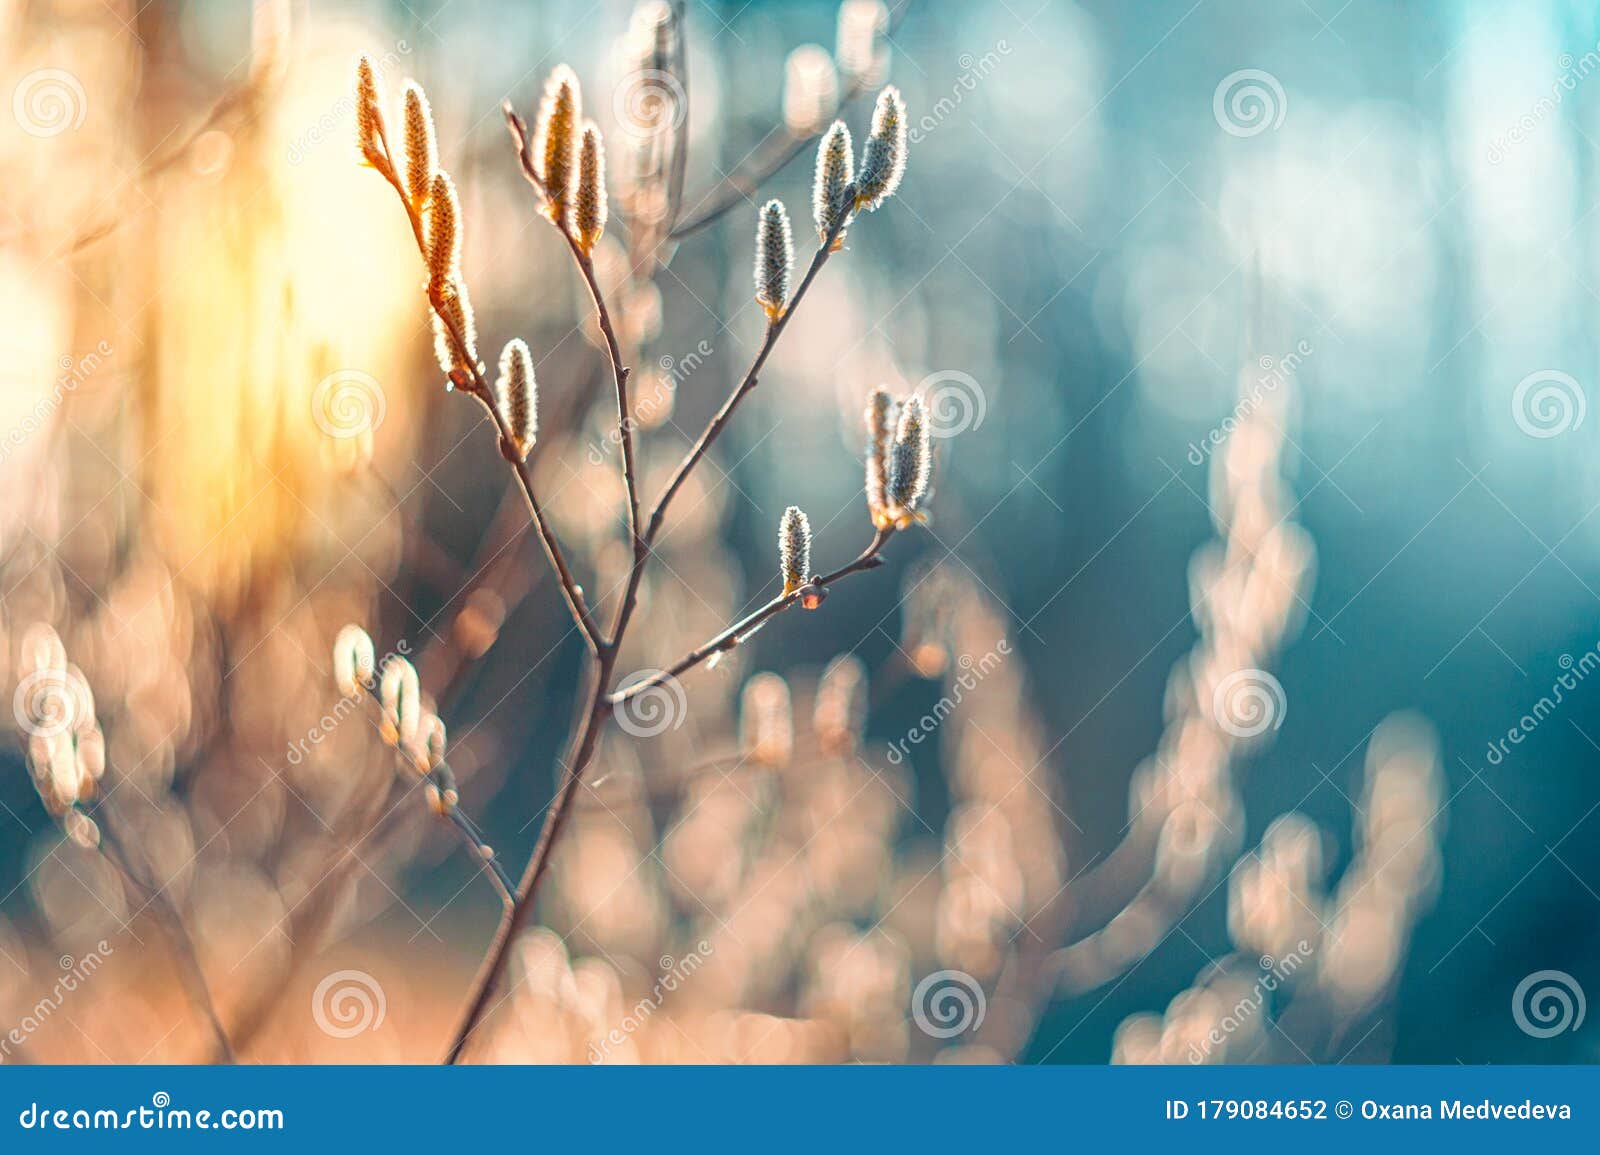 阳光明媚的春嫩柳树选择性聚焦艺术壁纸复古库存照片 图片包括有叶子 说明性 风景 场面